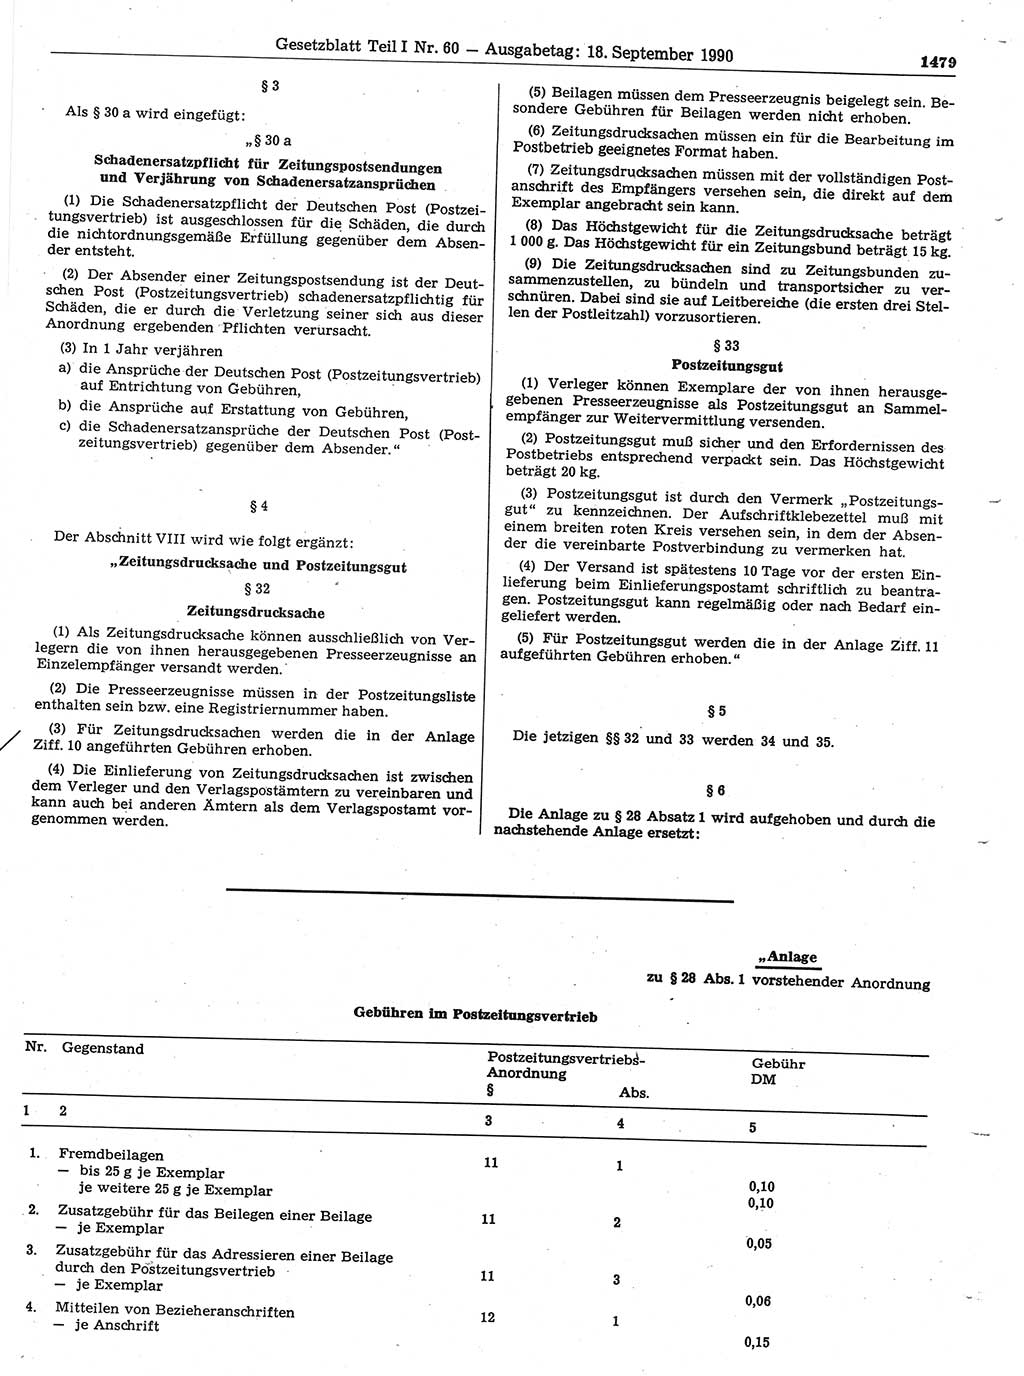 Gesetzblatt (GBl.) der Deutschen Demokratischen Republik (DDR) Teil Ⅰ 1990, Seite 1479 (GBl. DDR Ⅰ 1990, S. 1479)